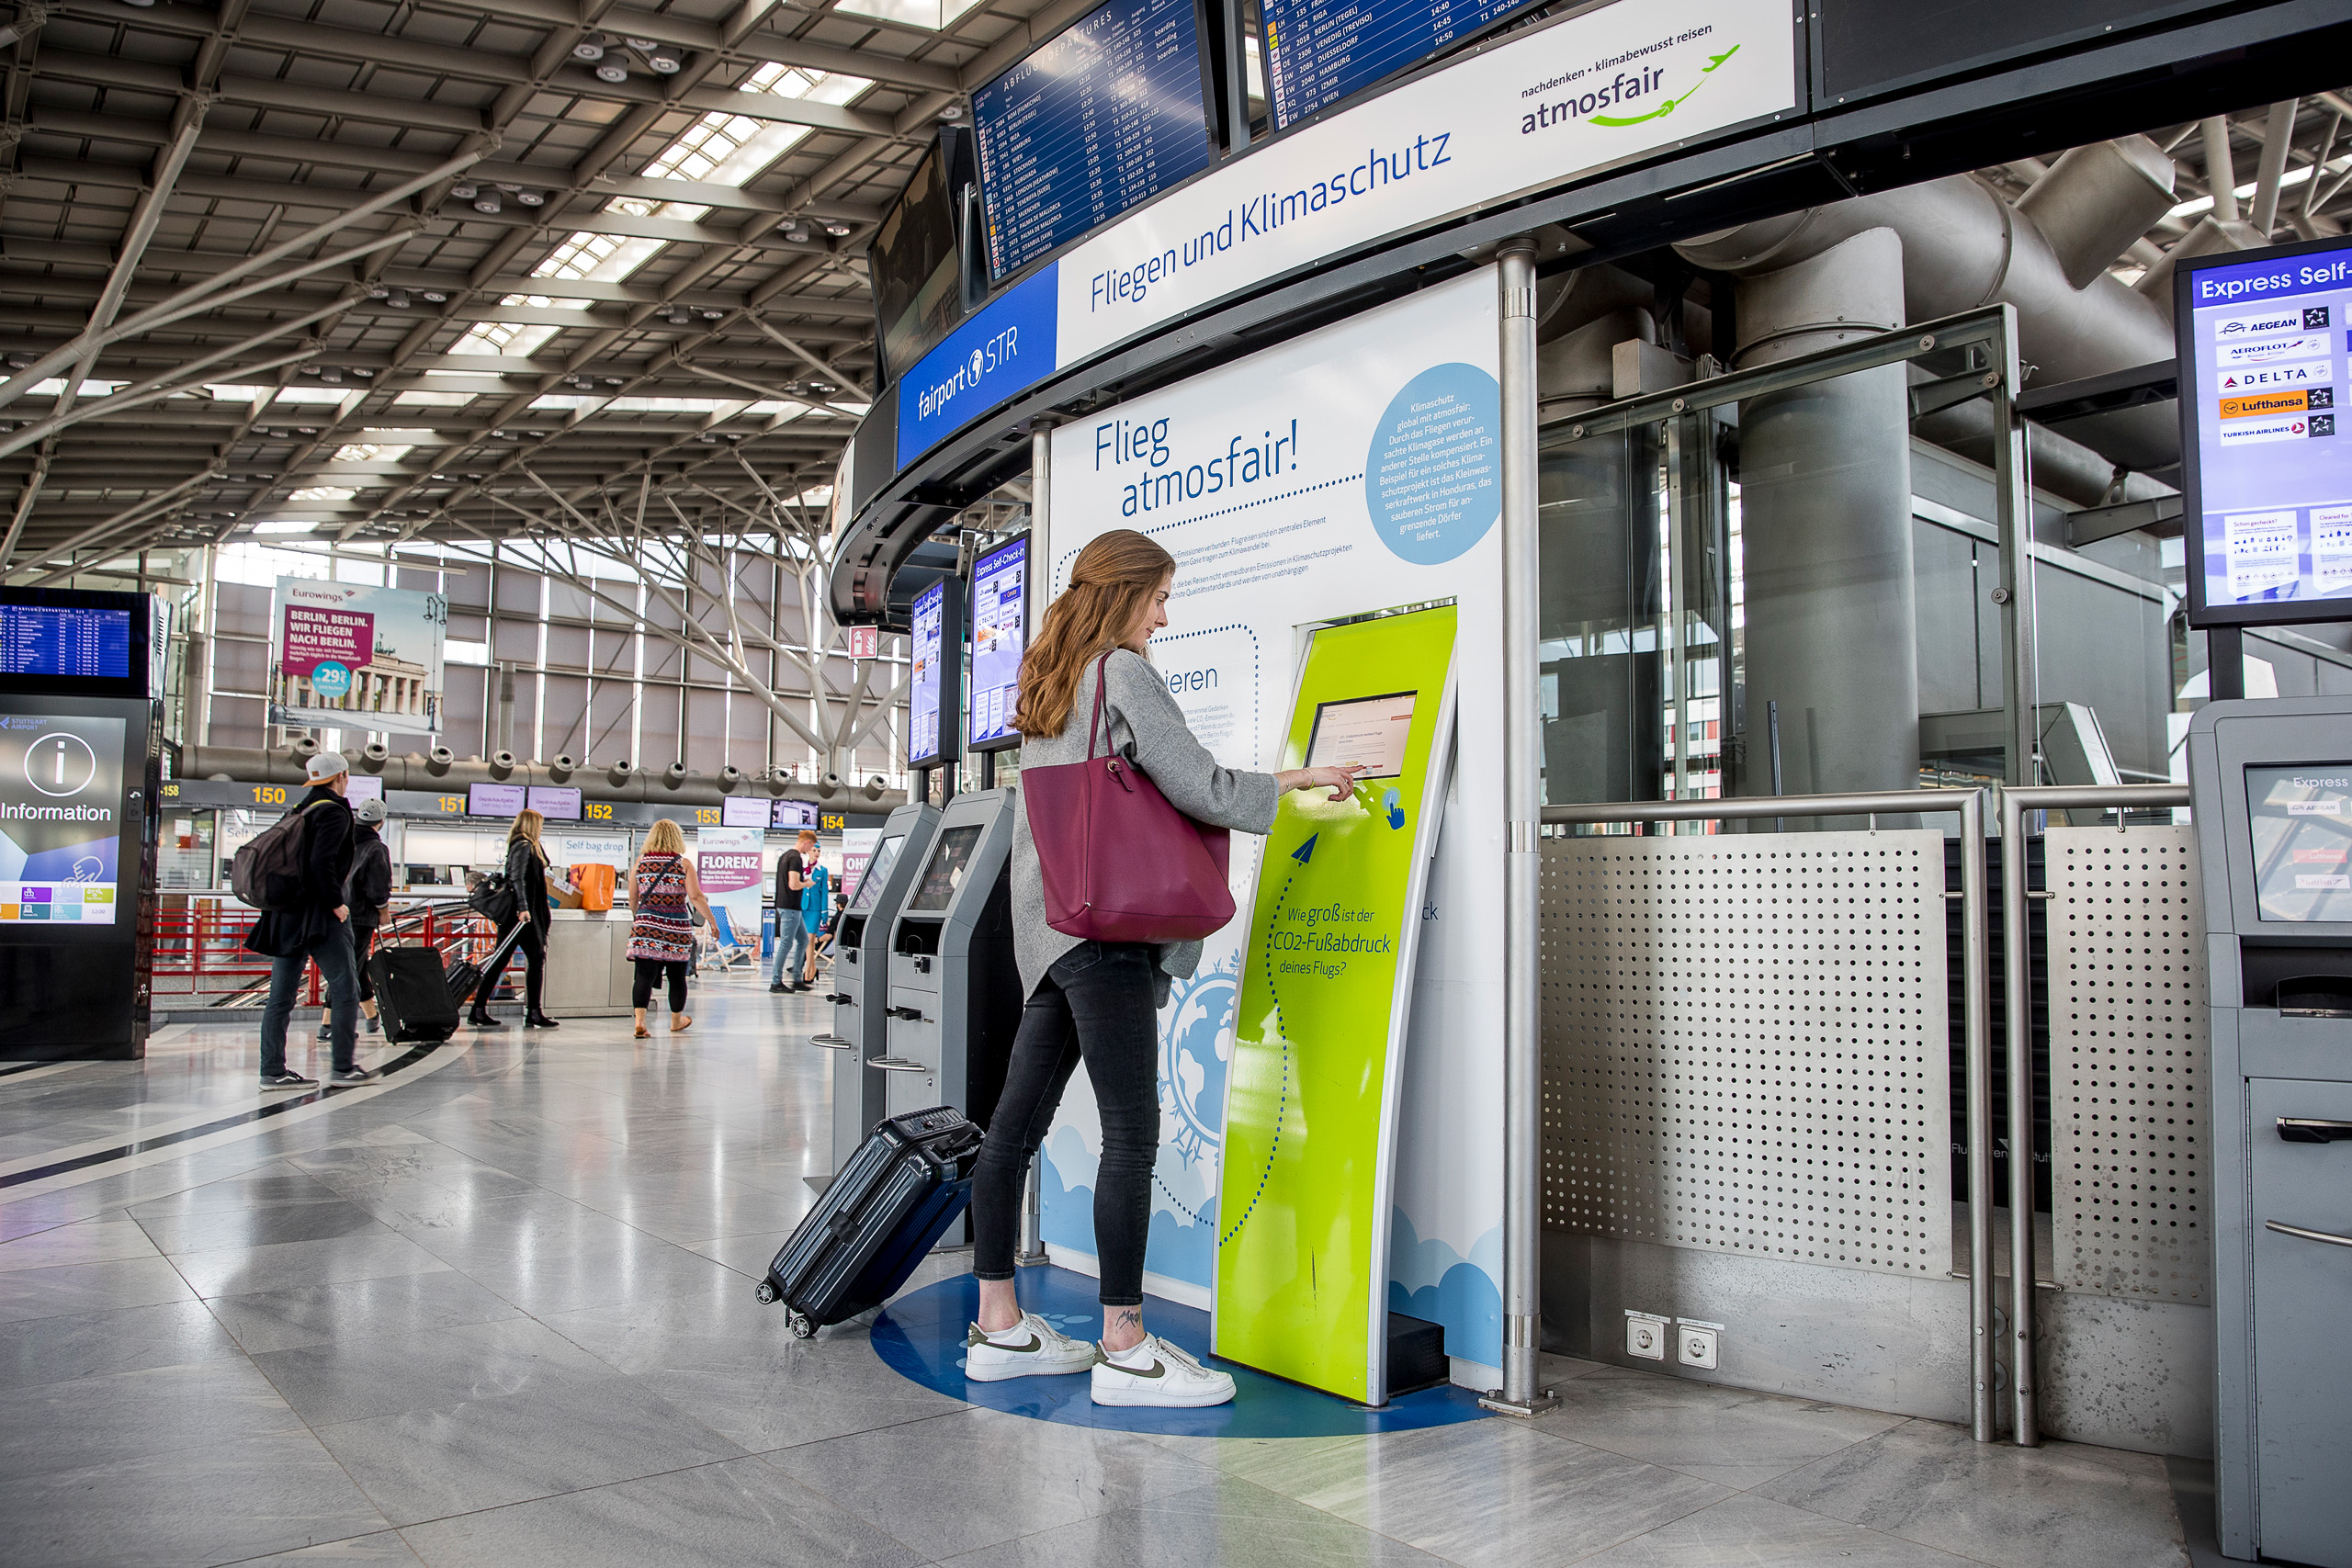 Eine Passagierin berechnet die Emissionen ihres Fluges an der Atmosfair Station im Terminal.